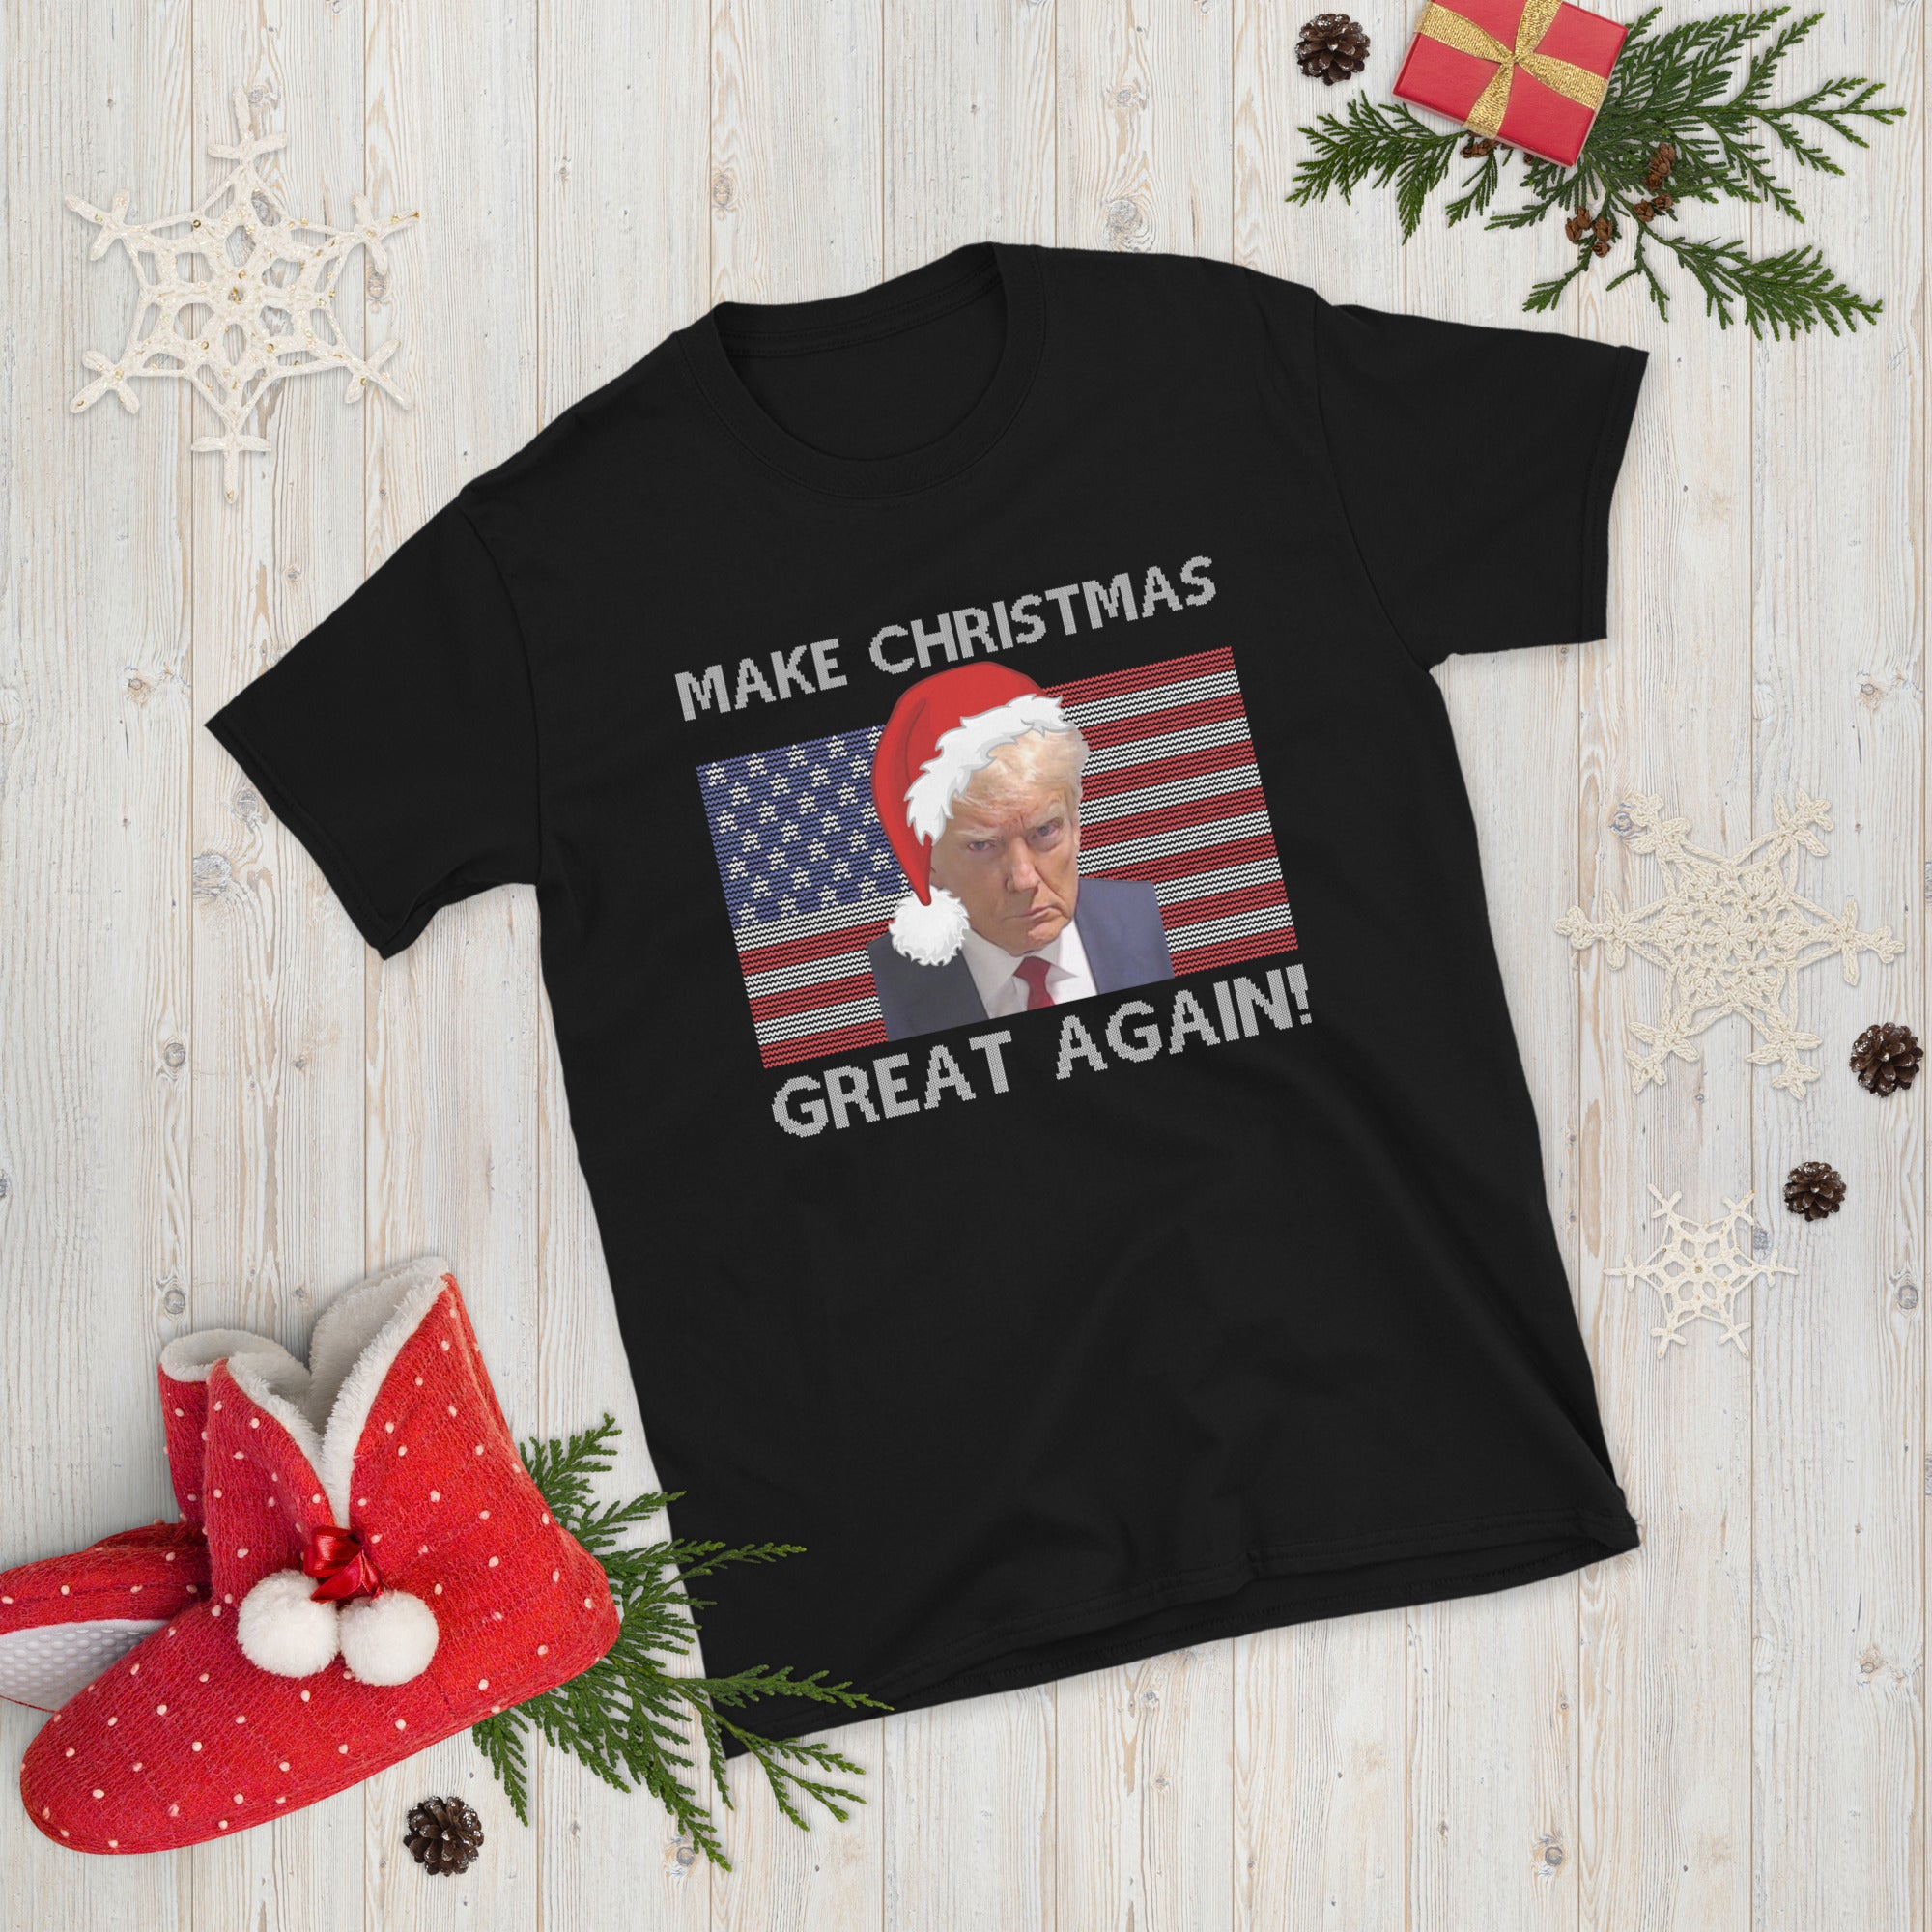 Make Christmas Great Again, Funny Donald Trump Santa Xmas Ugly Christmas Shirt, Trumpmugshot Shirt, Republican Dad Gifts, Xmas Trump Tee - Madeinsea©